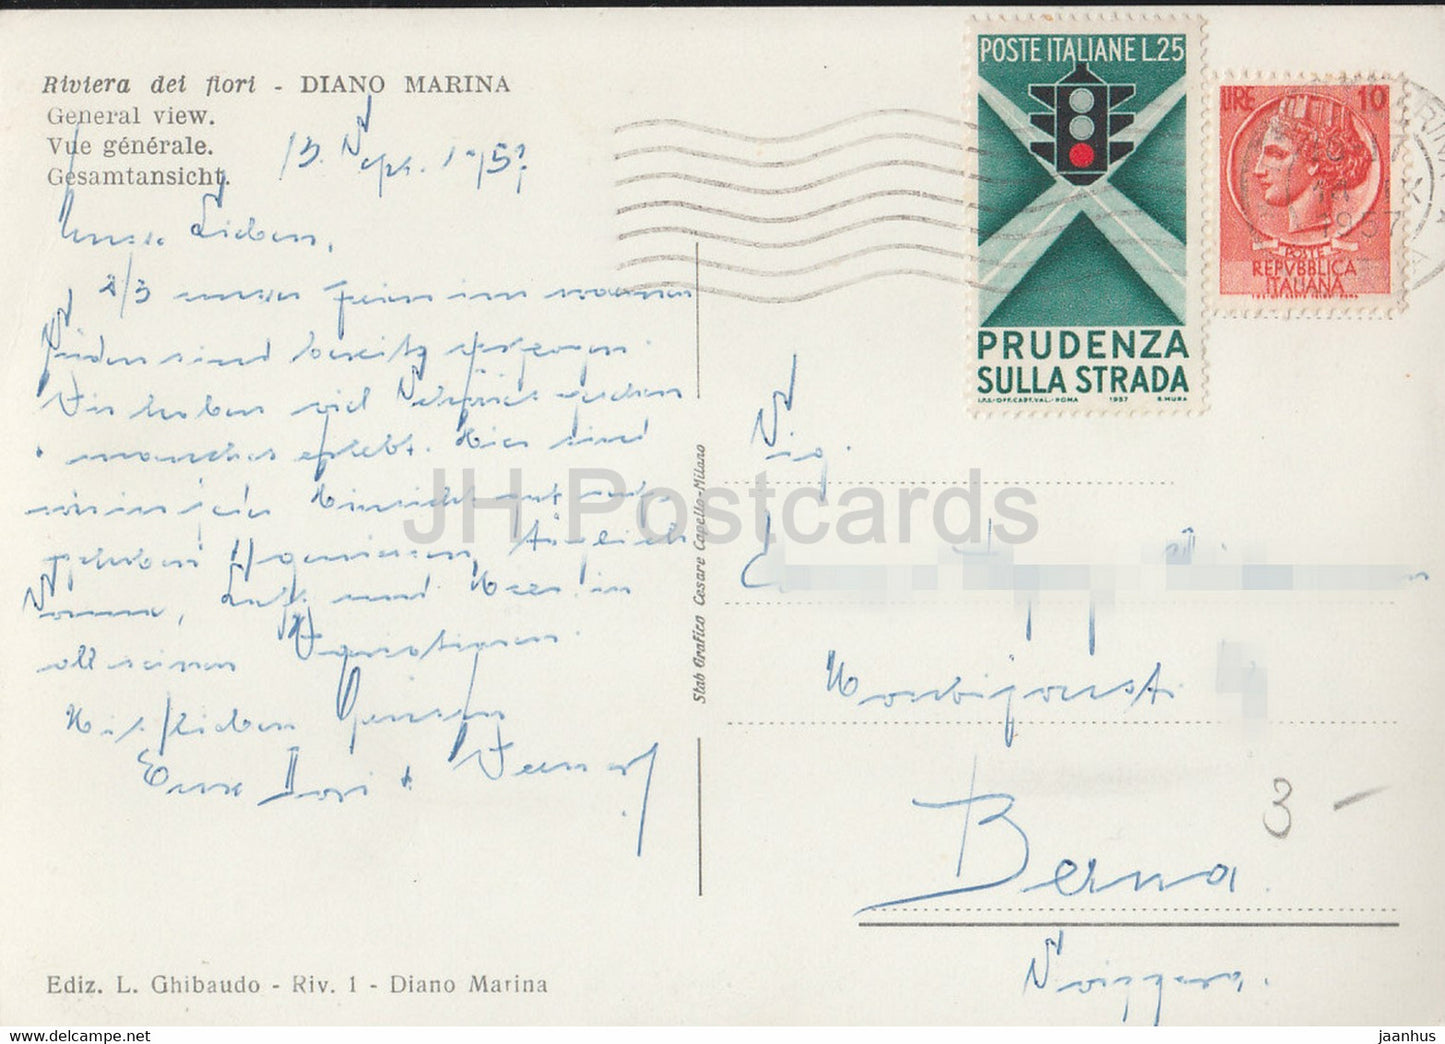 Diano Marina - panorama - plage - vue générale - carte postale ancienne - 1957 - Italie - utilisé